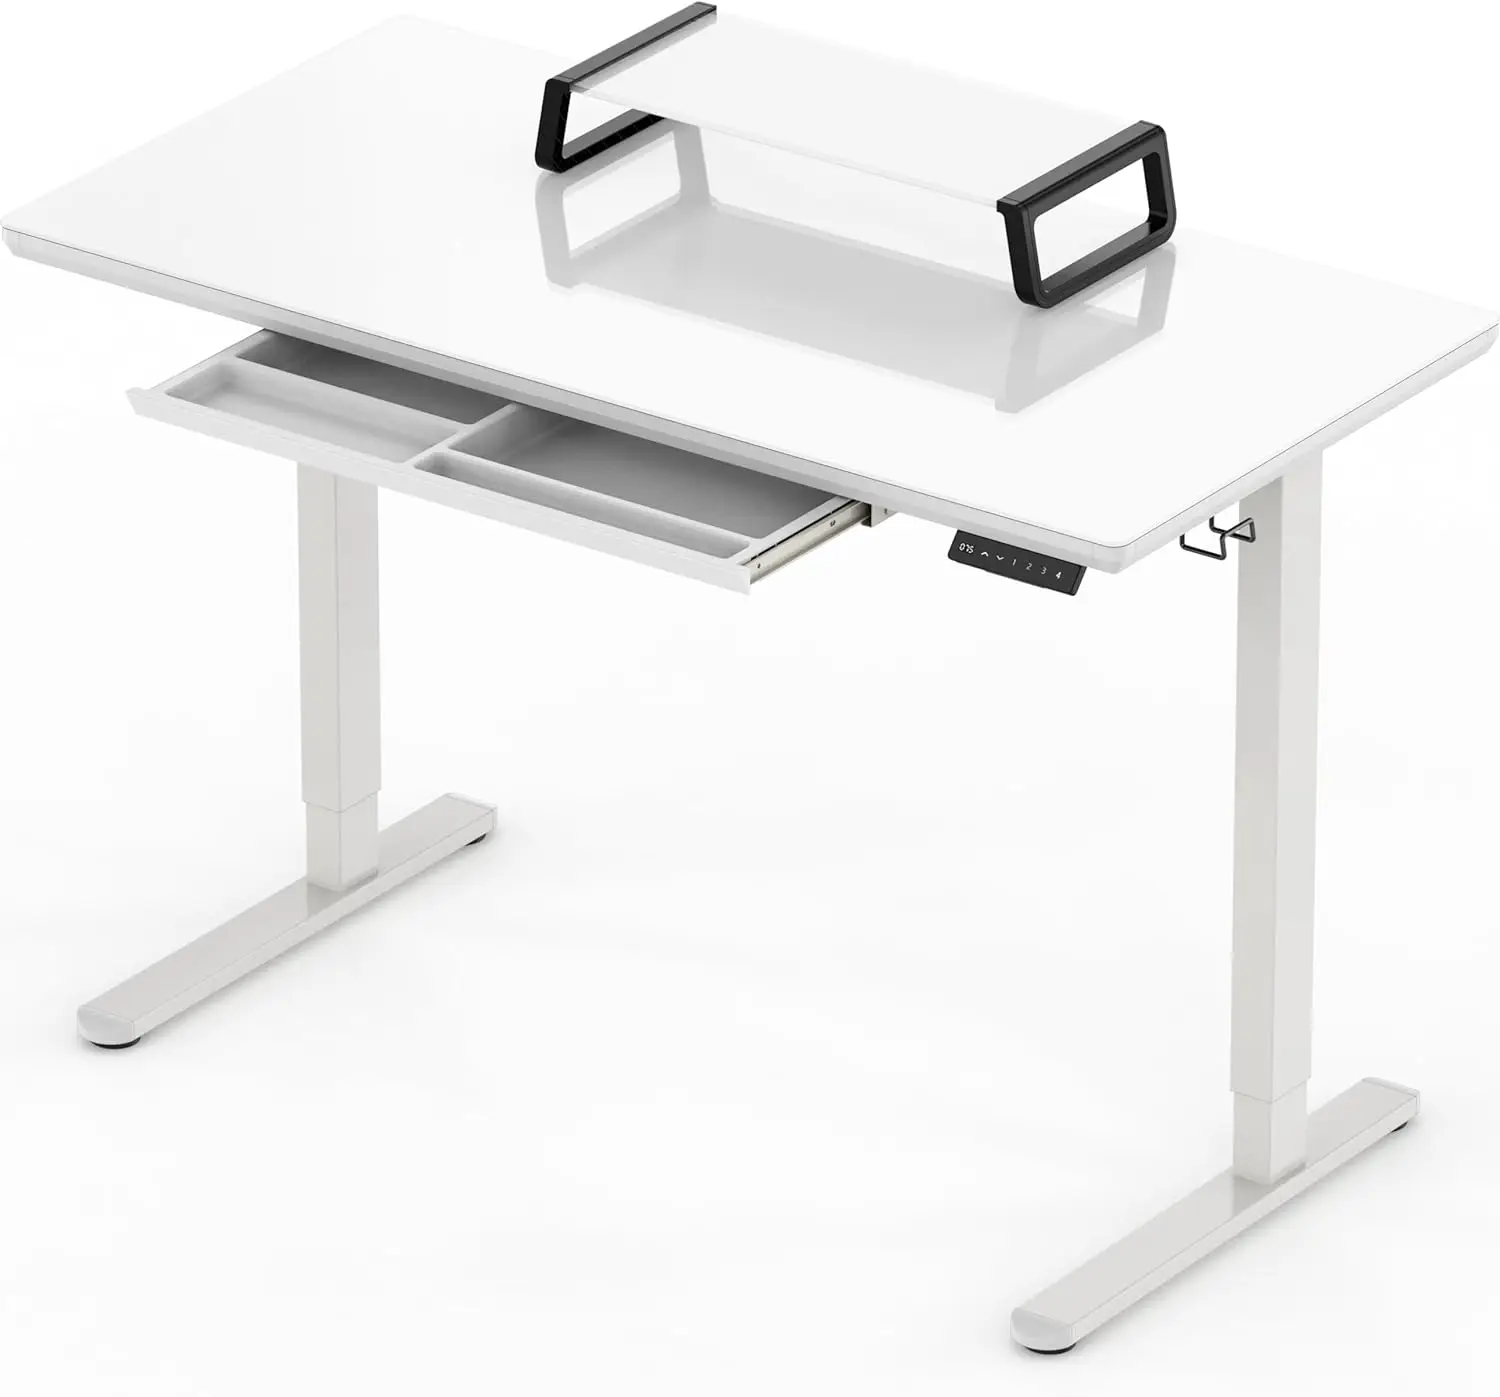 SHW-Регулируемый стеклянный стол со стояком для монитора и выдвижным ящиком, высота 48 дюймов